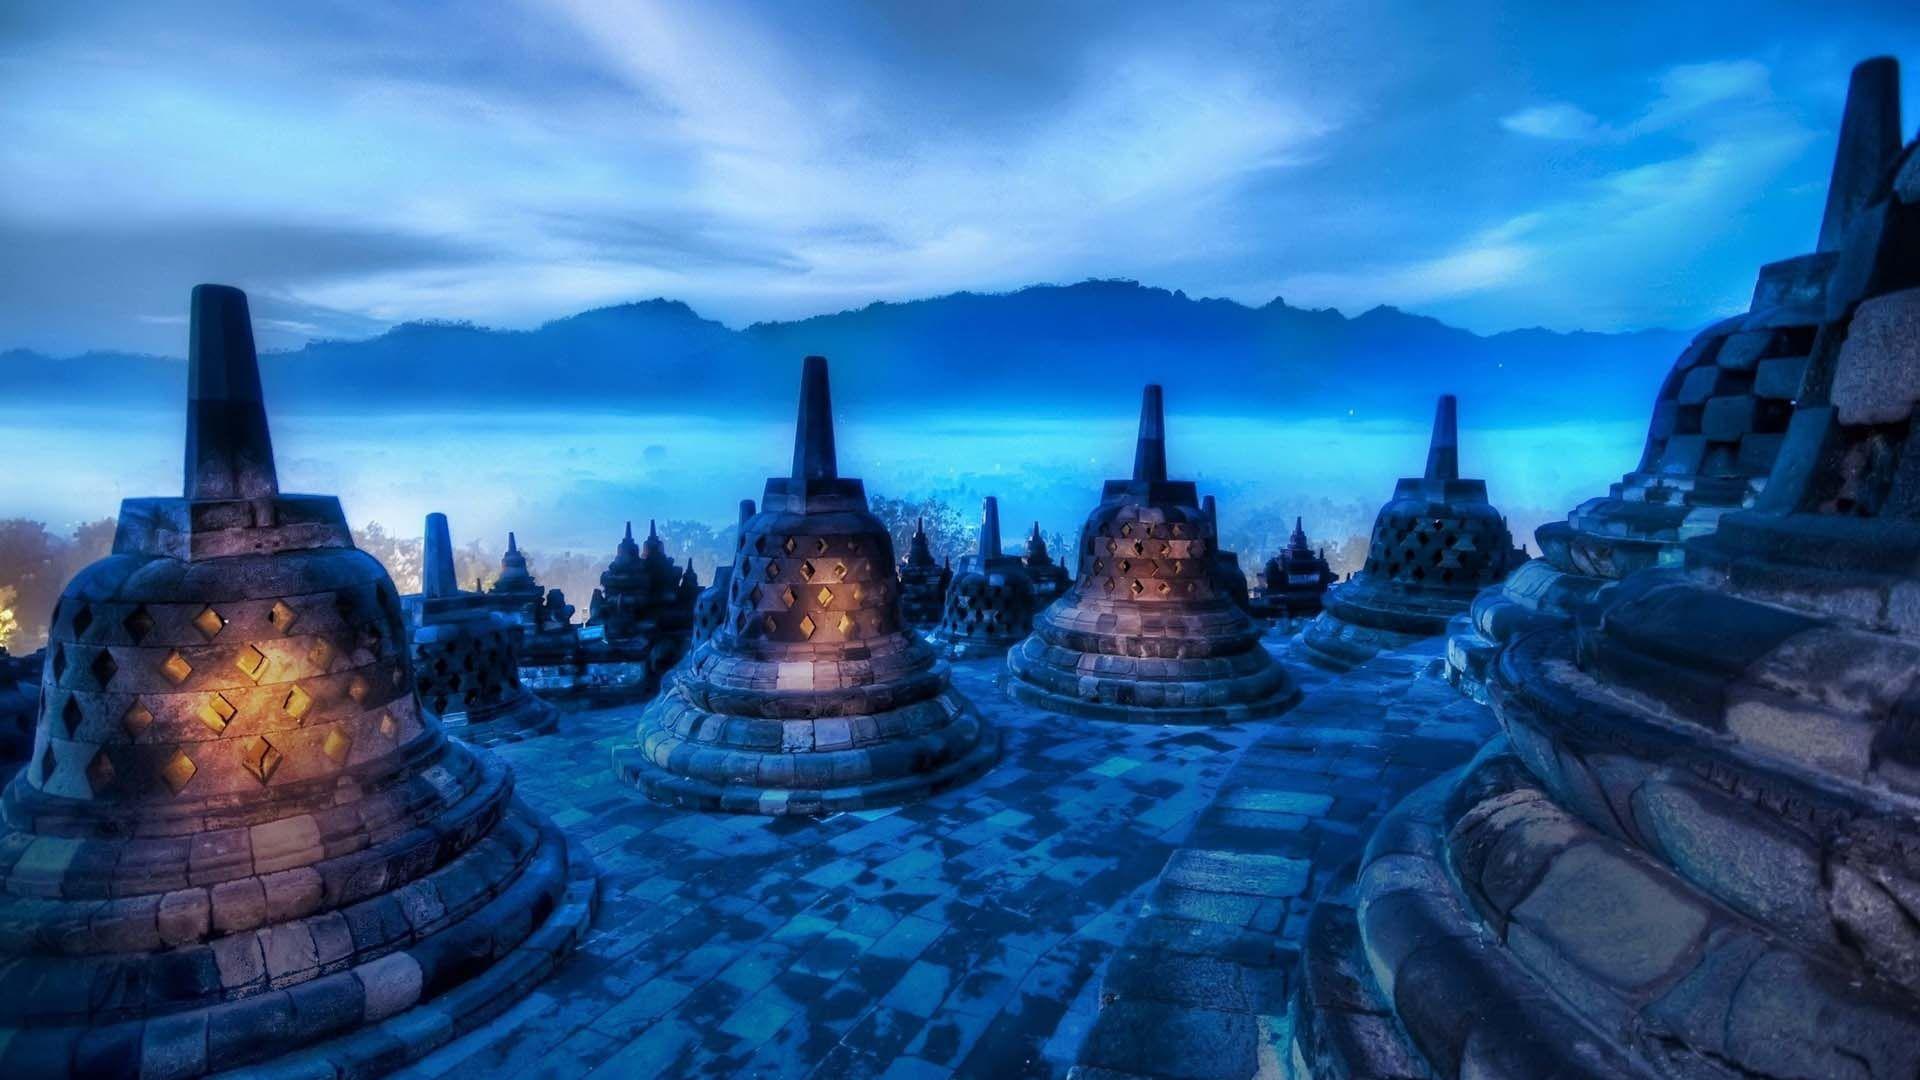 Borobudur Temple Desktop Wallpaper. HD Travel Wallpaper